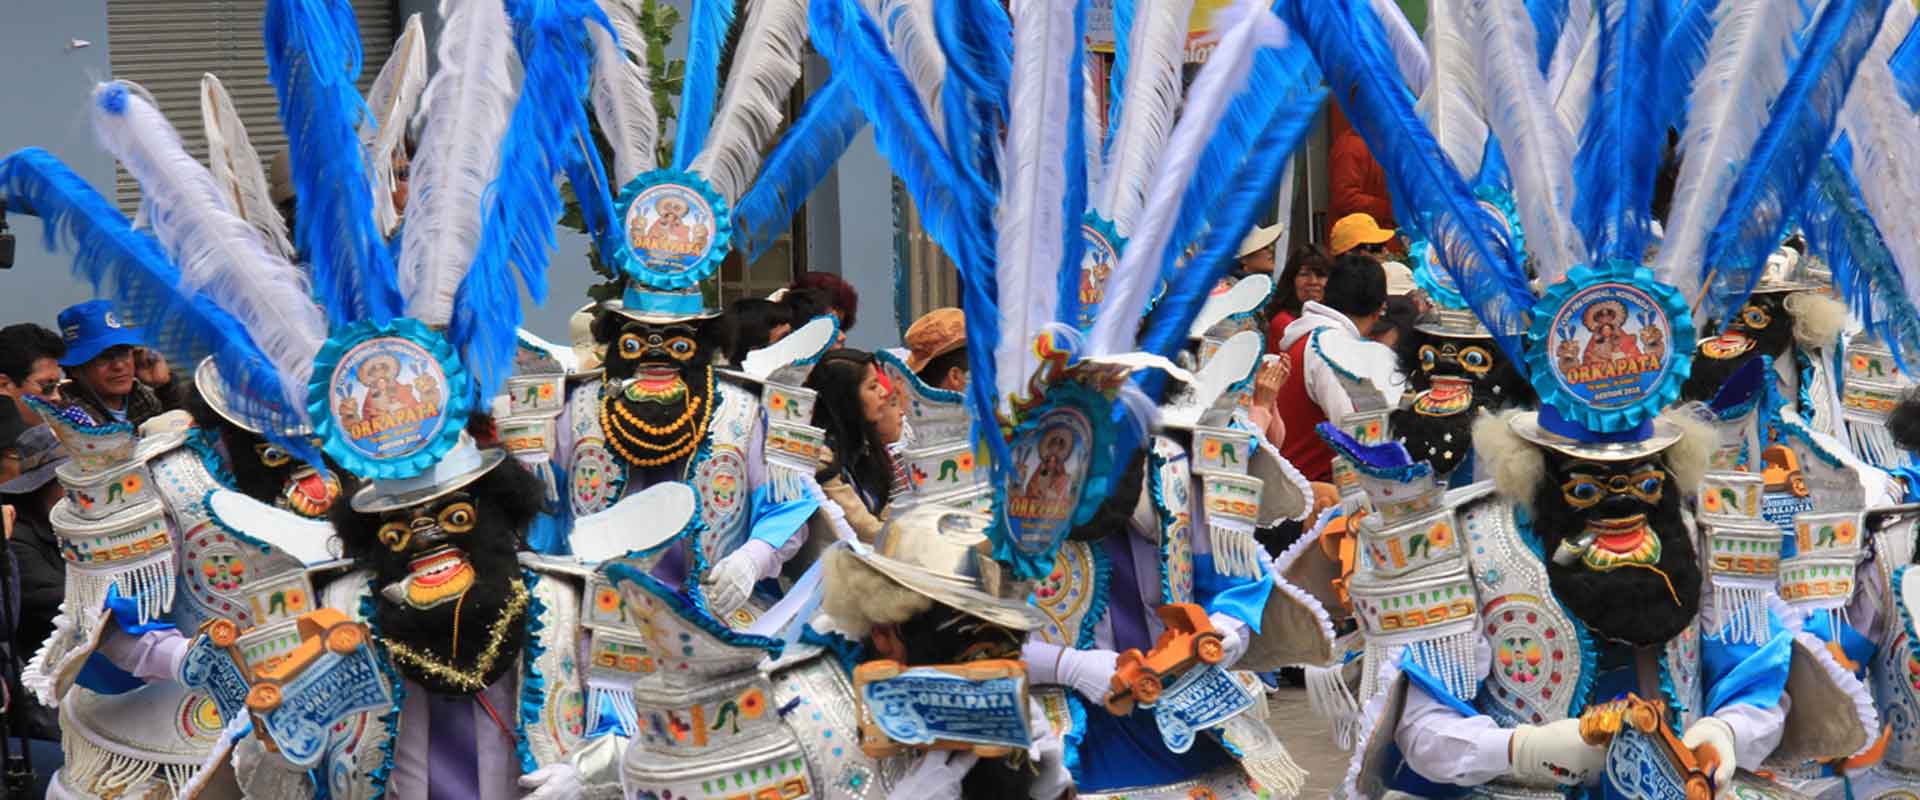 Unique culture. Гватемала культура. Дьяблада. Ля Канделярия карнавал. Гватемала культура традиции.